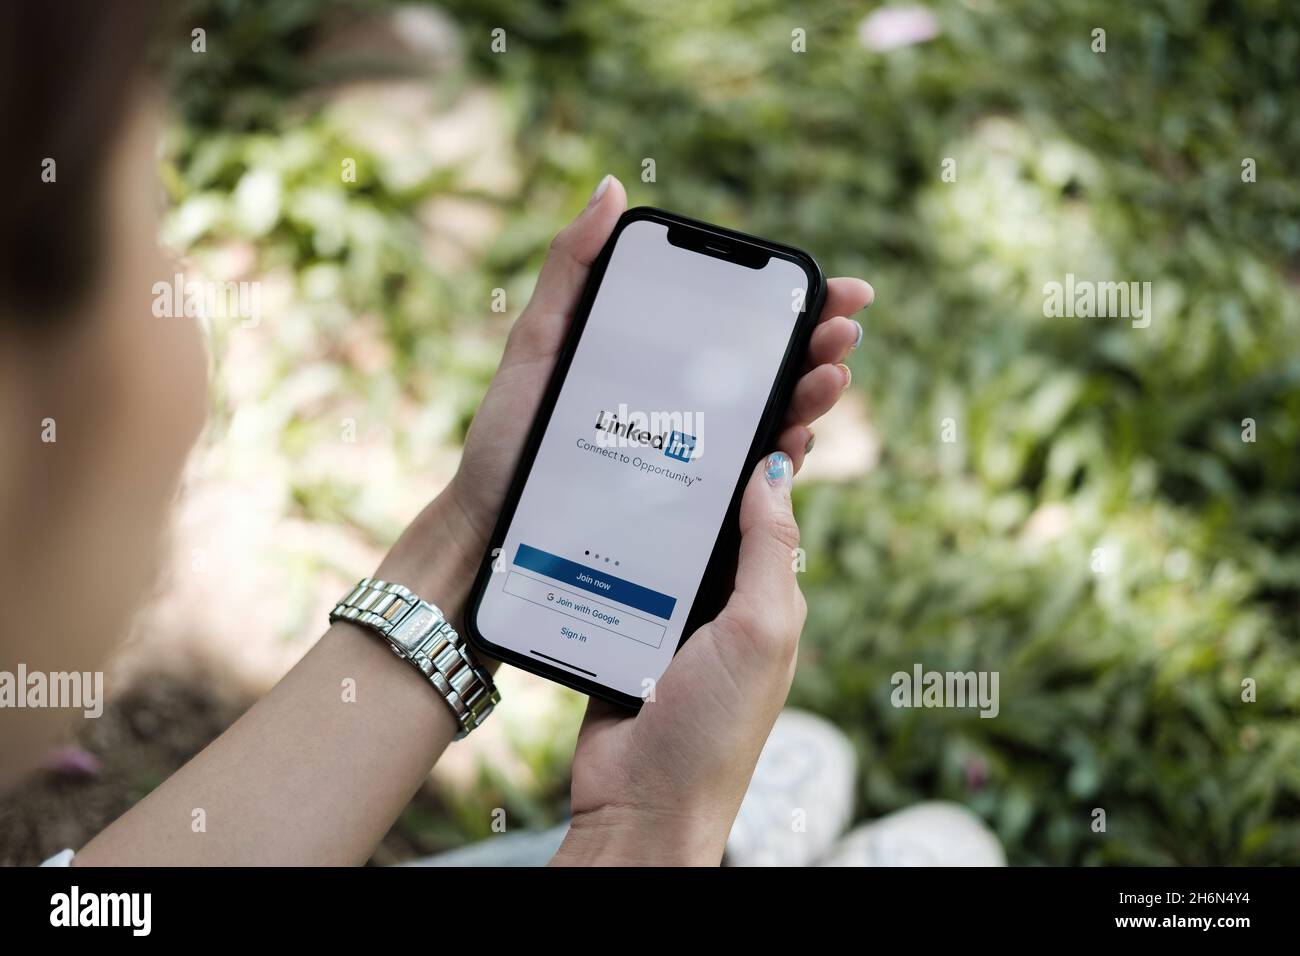 CHIANG MAI, THAILAND OCT 3, 2021 : Eine Frau, die ein iPhone x mit dem sozialen Netzwerkdienst LinkedIn auf dem Bildschirm hält. IPhone 6s wurde erstellt und entwickelt Stockfoto